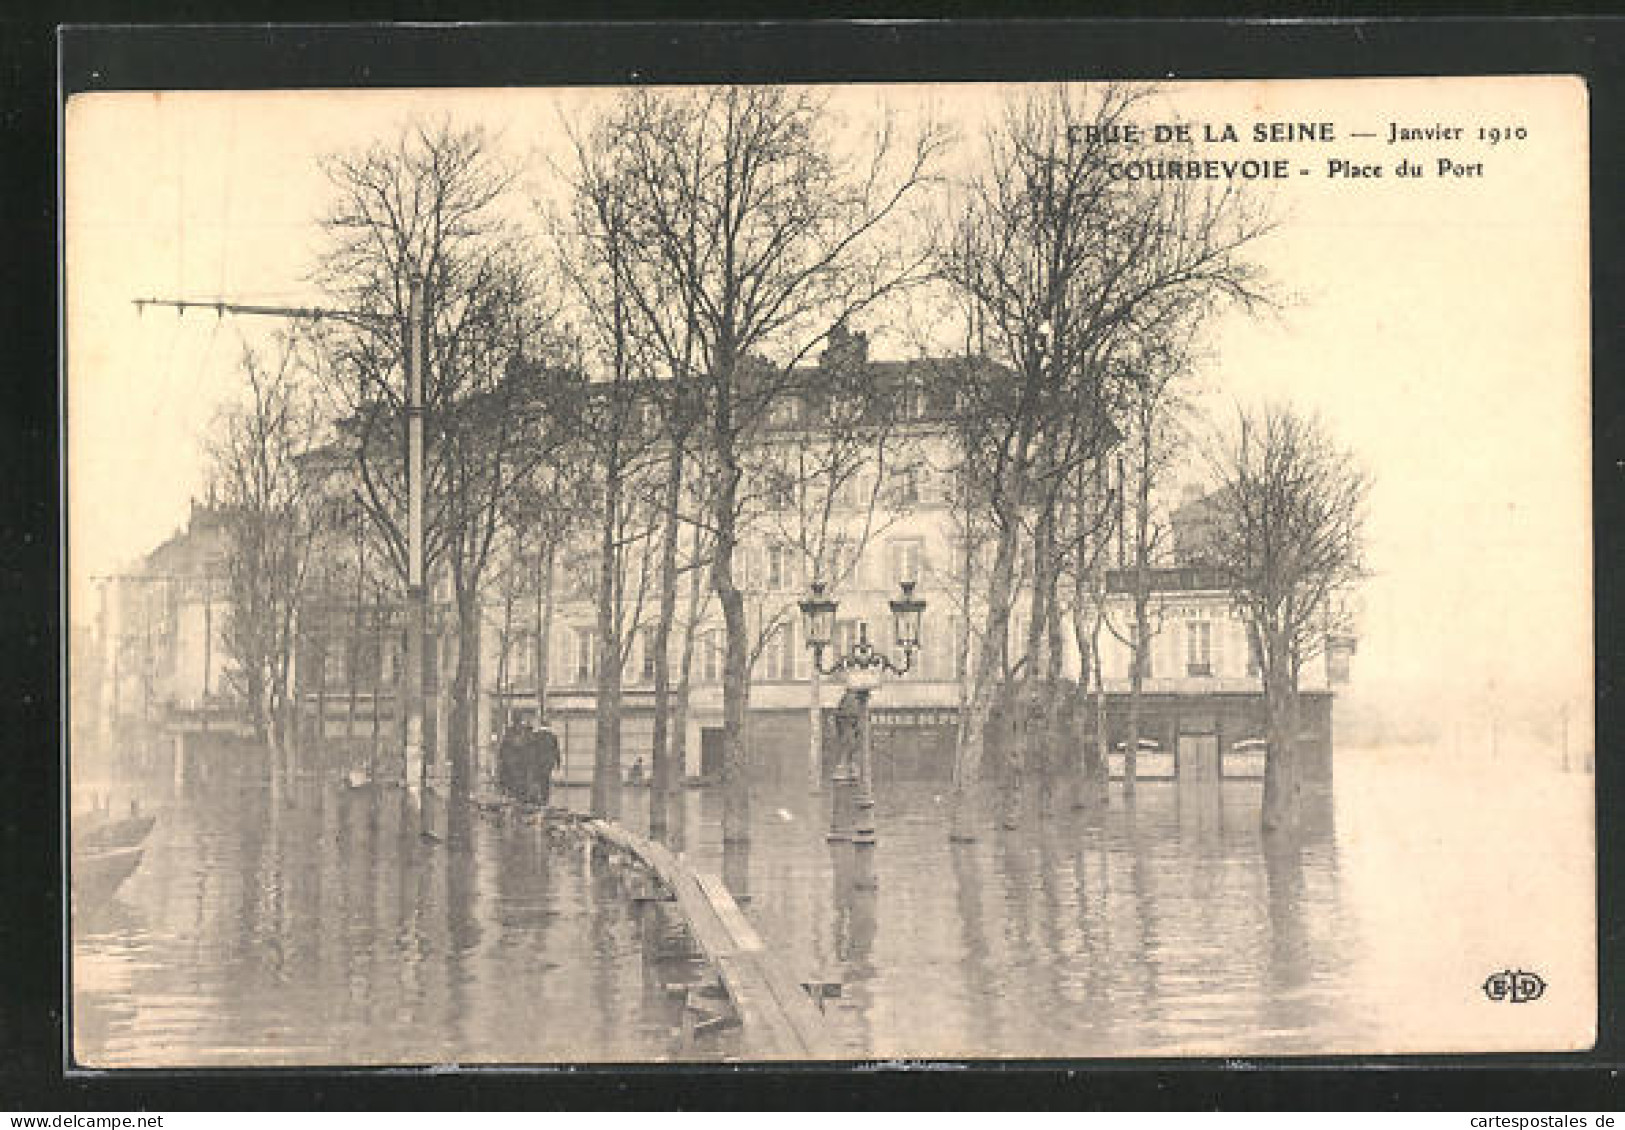 AK Crue De La Seine Janvier 1910, Courbevoie - Place Du Port, Hochwasser  - Overstromingen